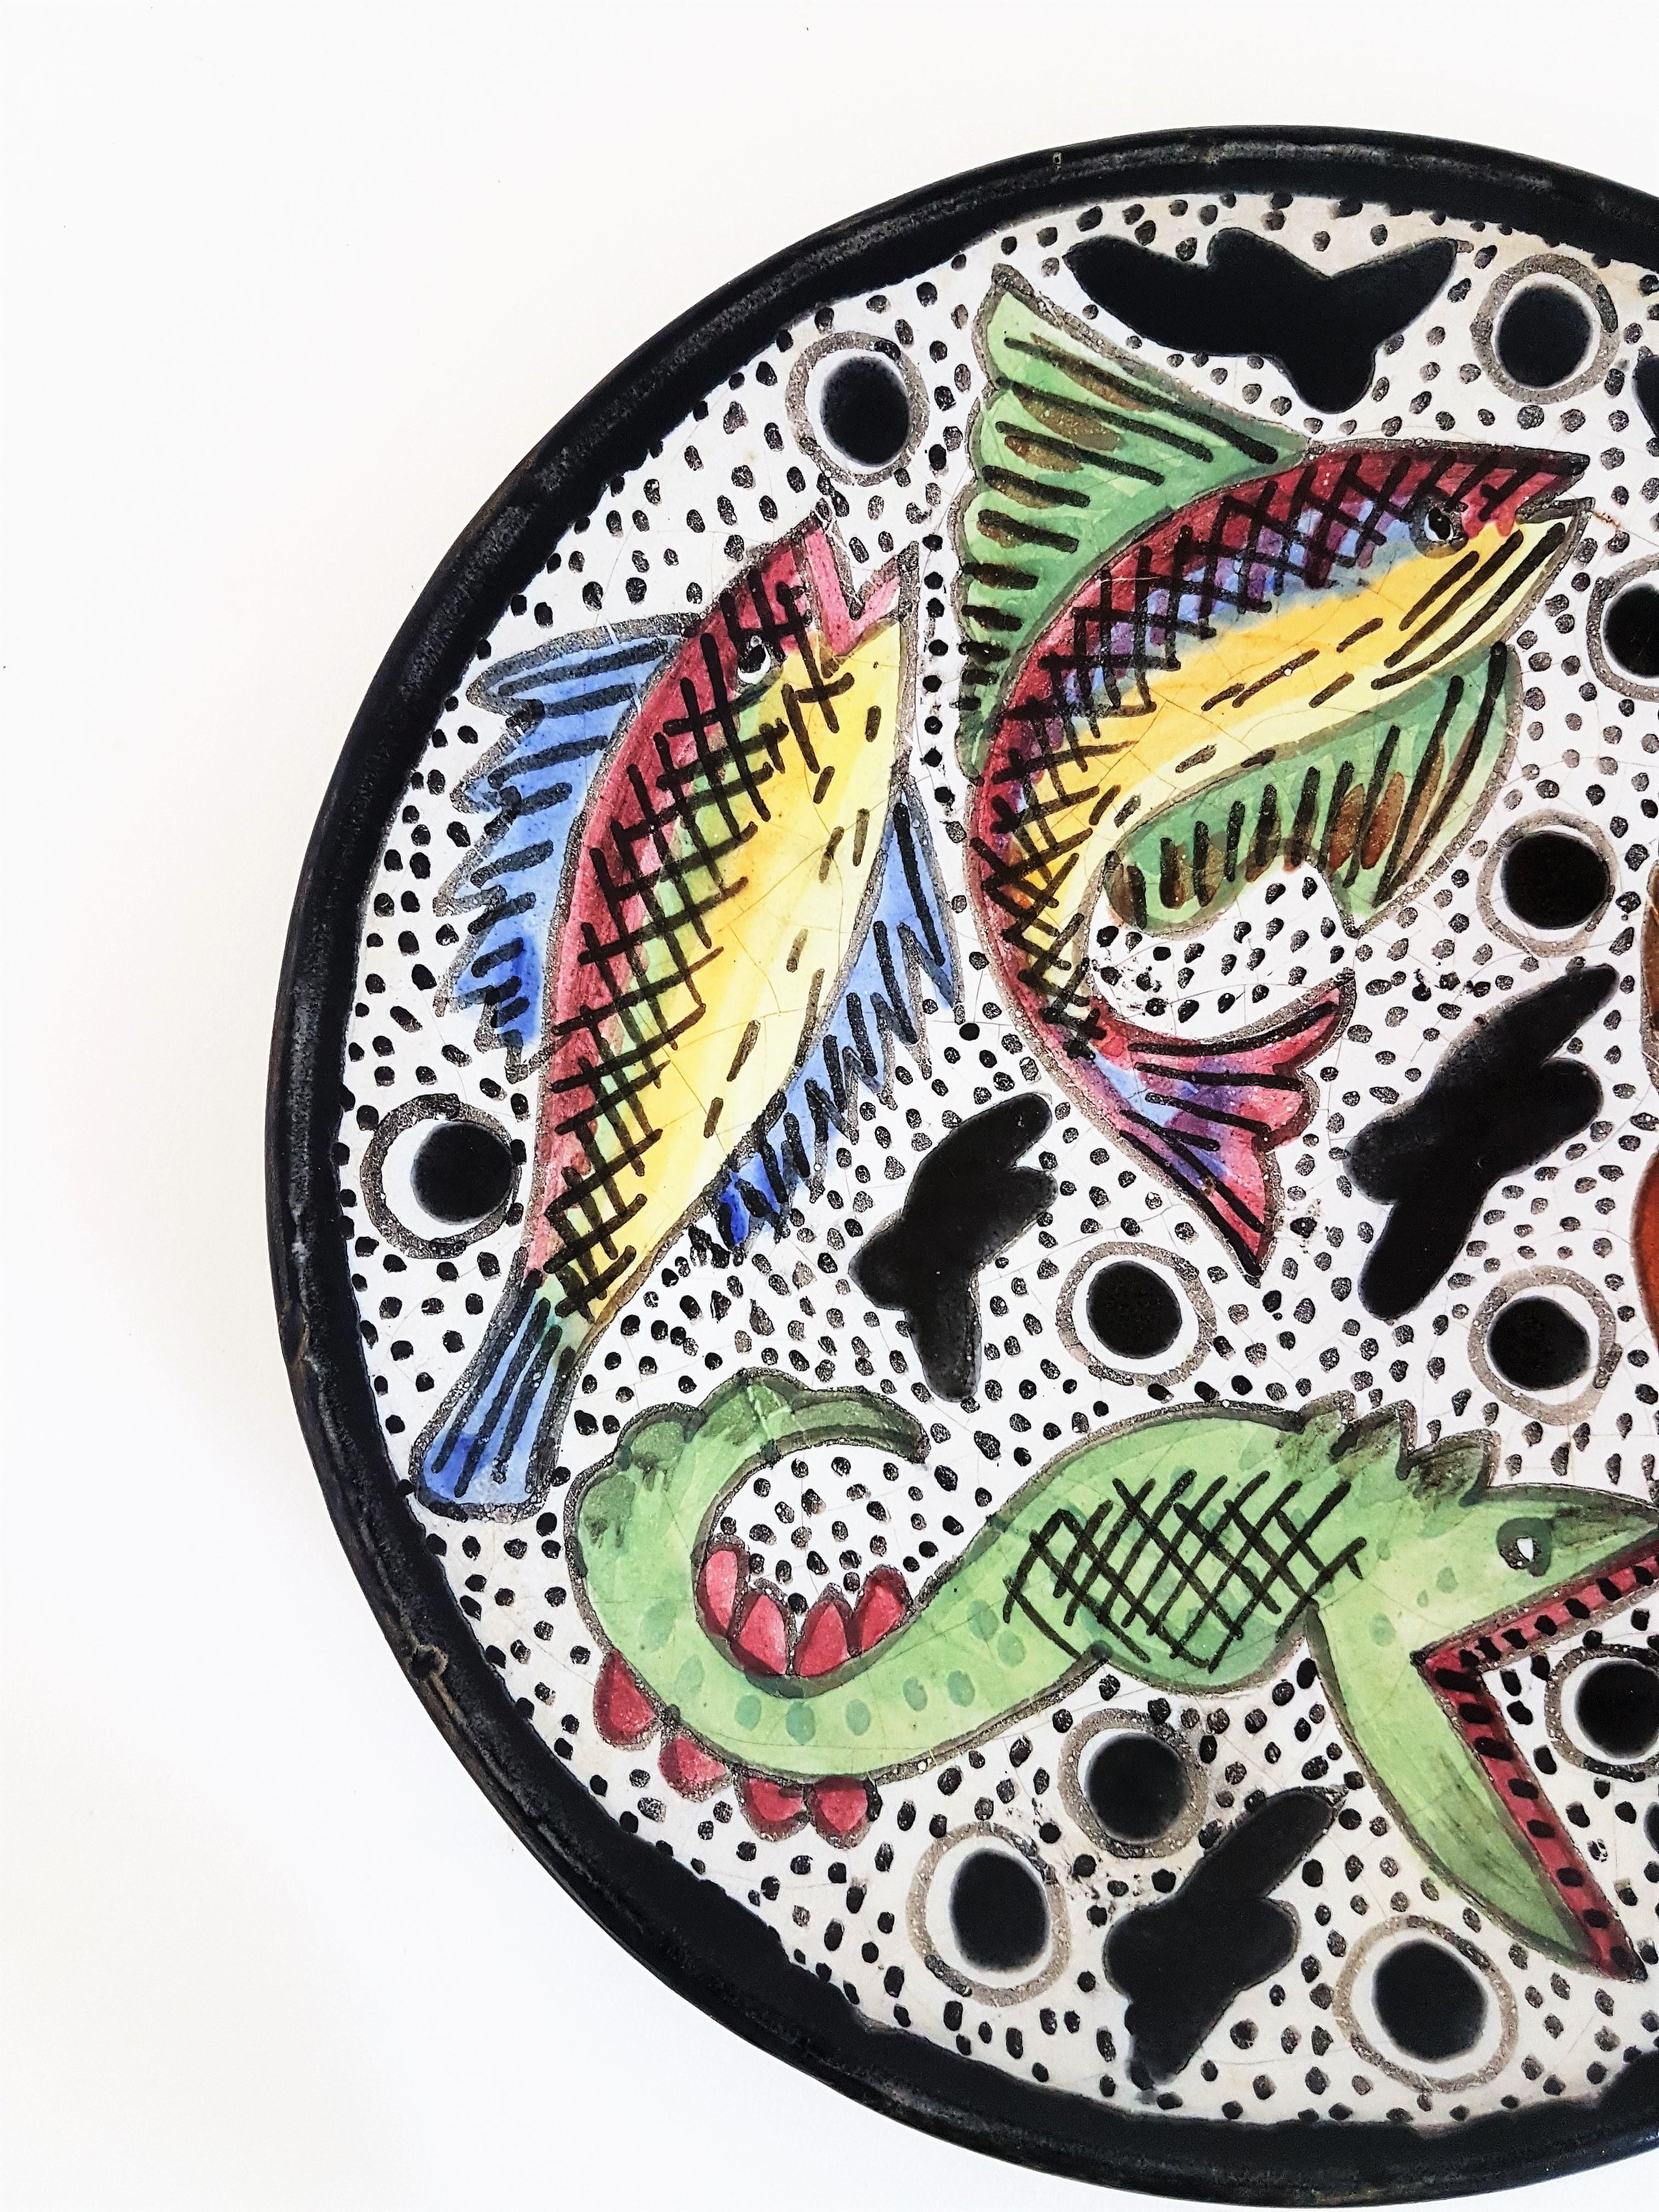 Handbemalter Wandteller aus Terrakotta im Naif-Fisch-Design
Schöner Terrakotta-Teller aus der Mitte des 20. Jahrhunderts mit handgemaltem Fischdekor. 
Gezeichnet Solé. 
Katalanische Schule, Spanien 1950er Jahre.
Ein schöner Teller, der als